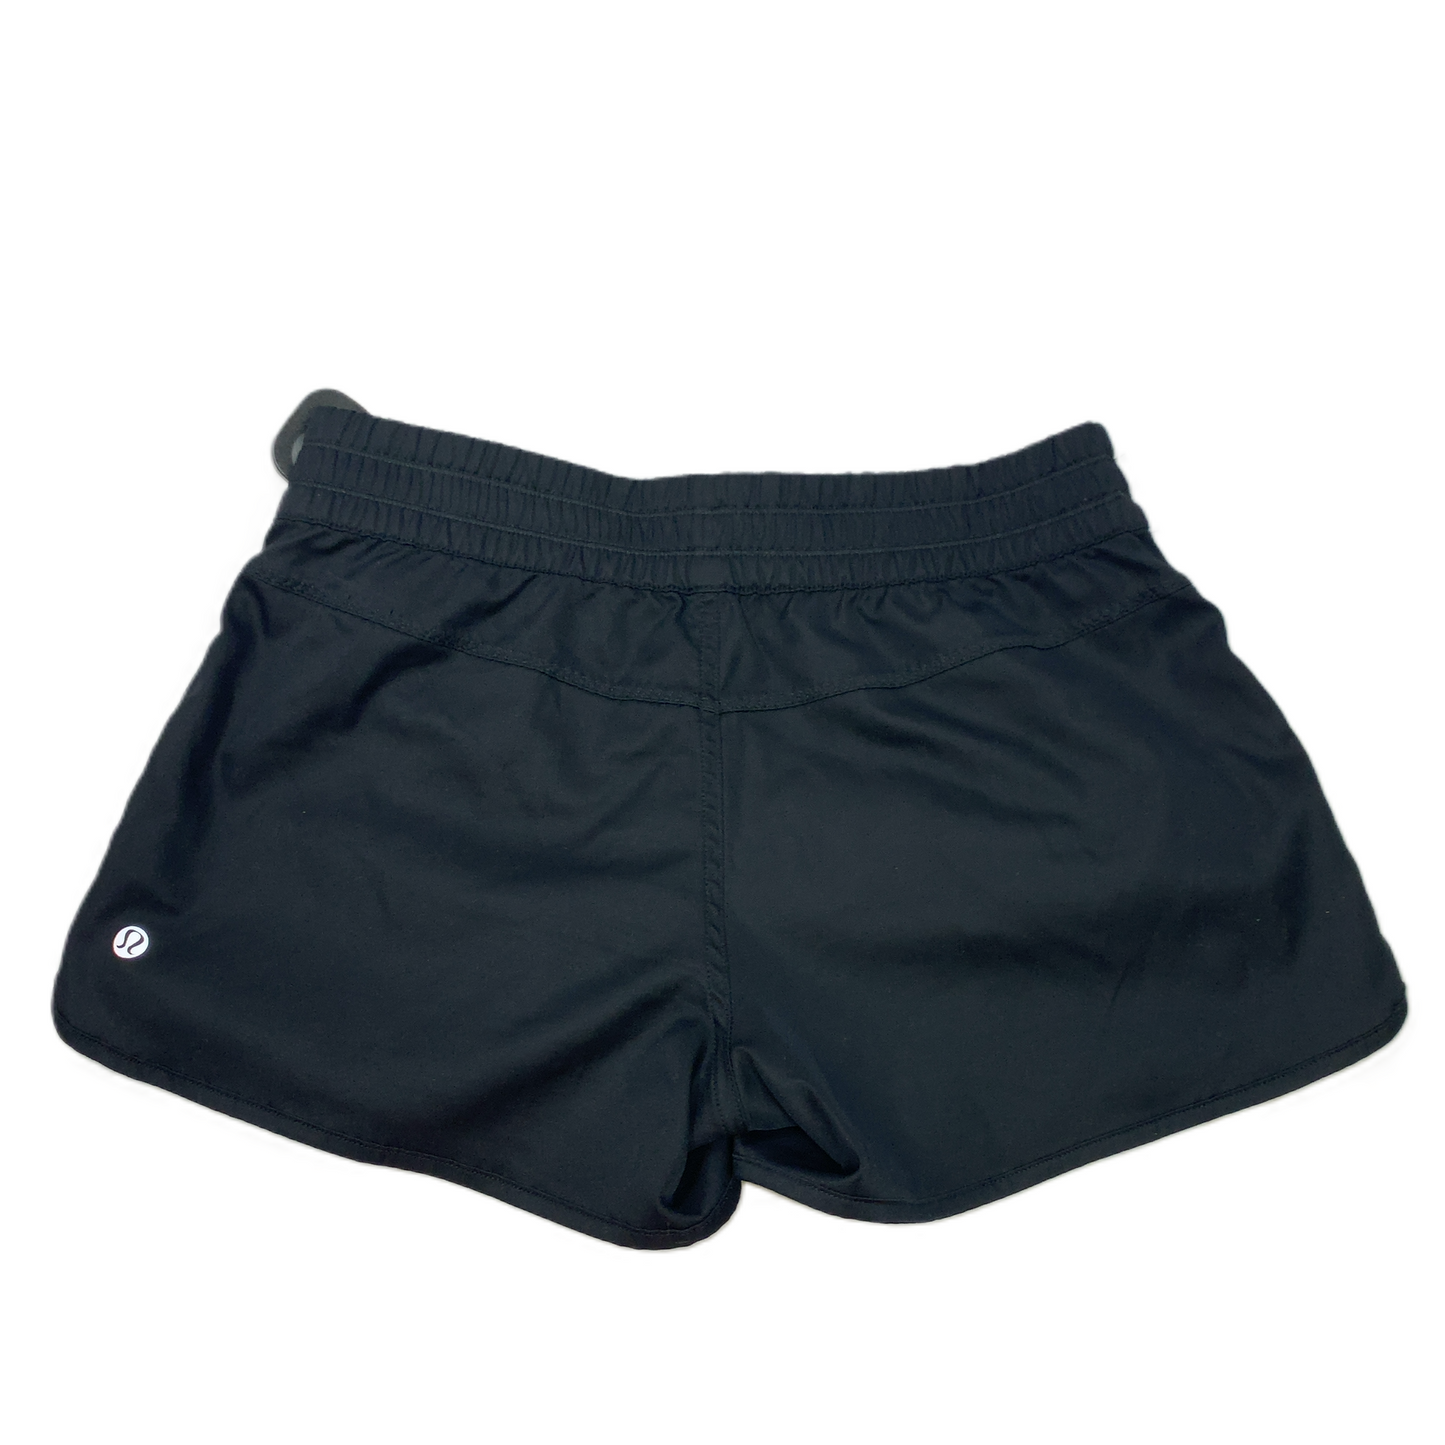 Black  Athletic Shorts By Lululemon  Size: S